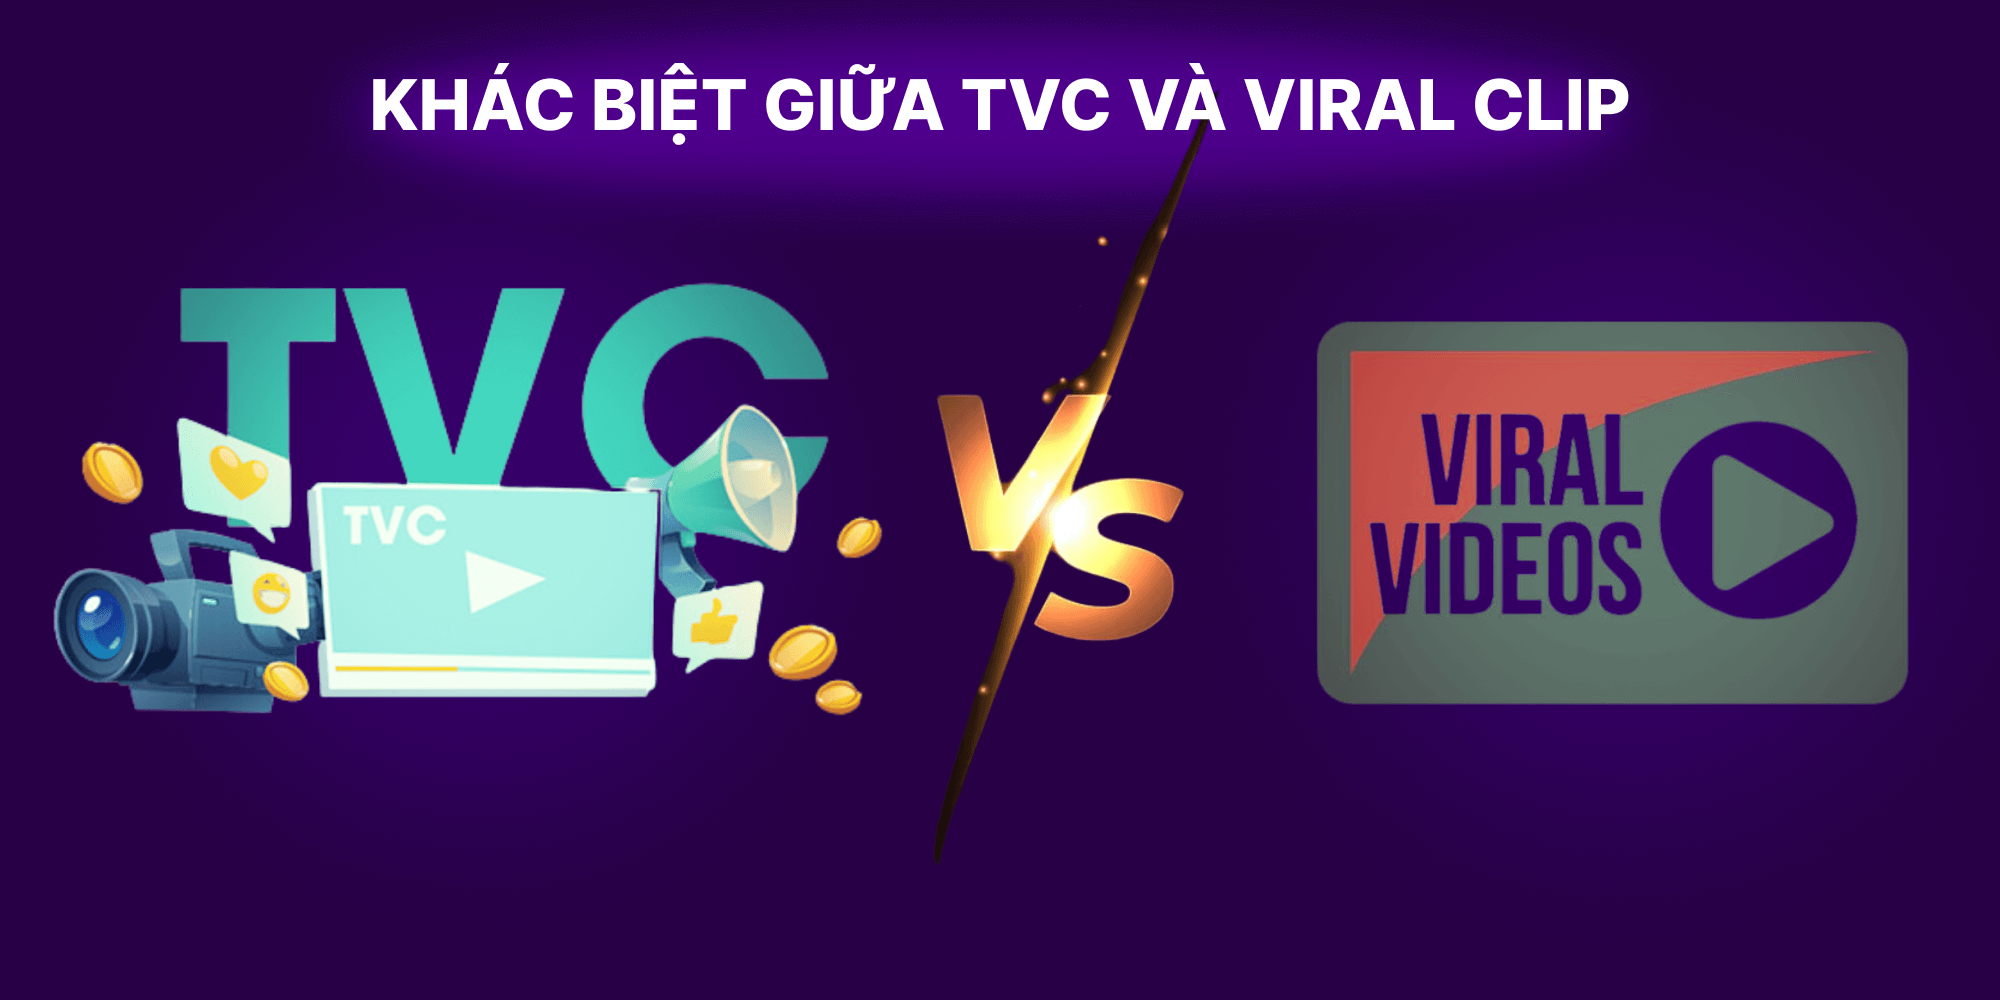 Khác biệt giữa TVC và Viral Clip là gì?